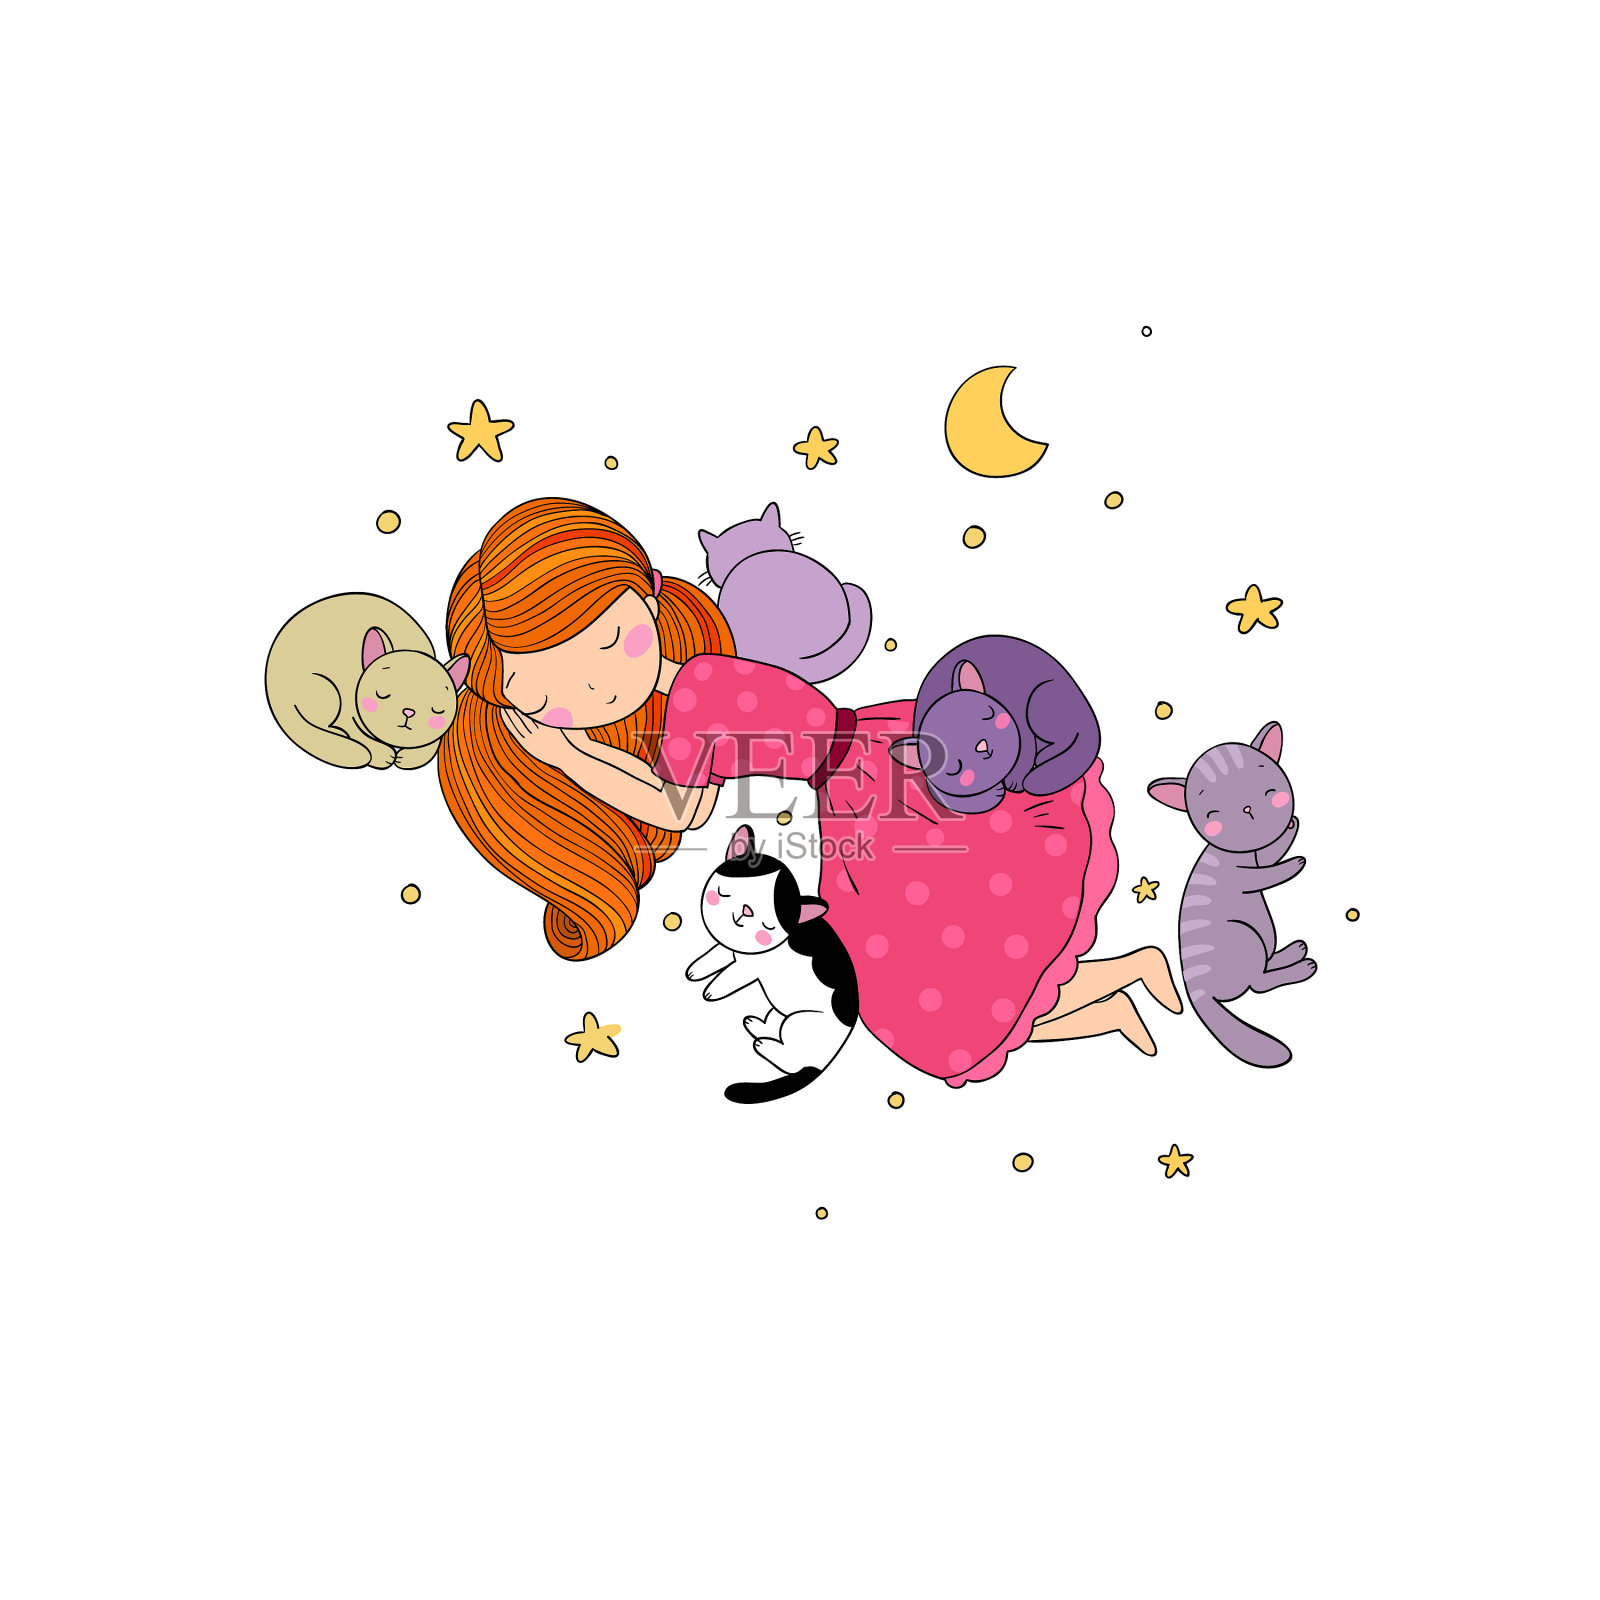 晚安你好之躺在床上的少女小清新粉色少女心免费下载_插画图片(4725像素)-千图网